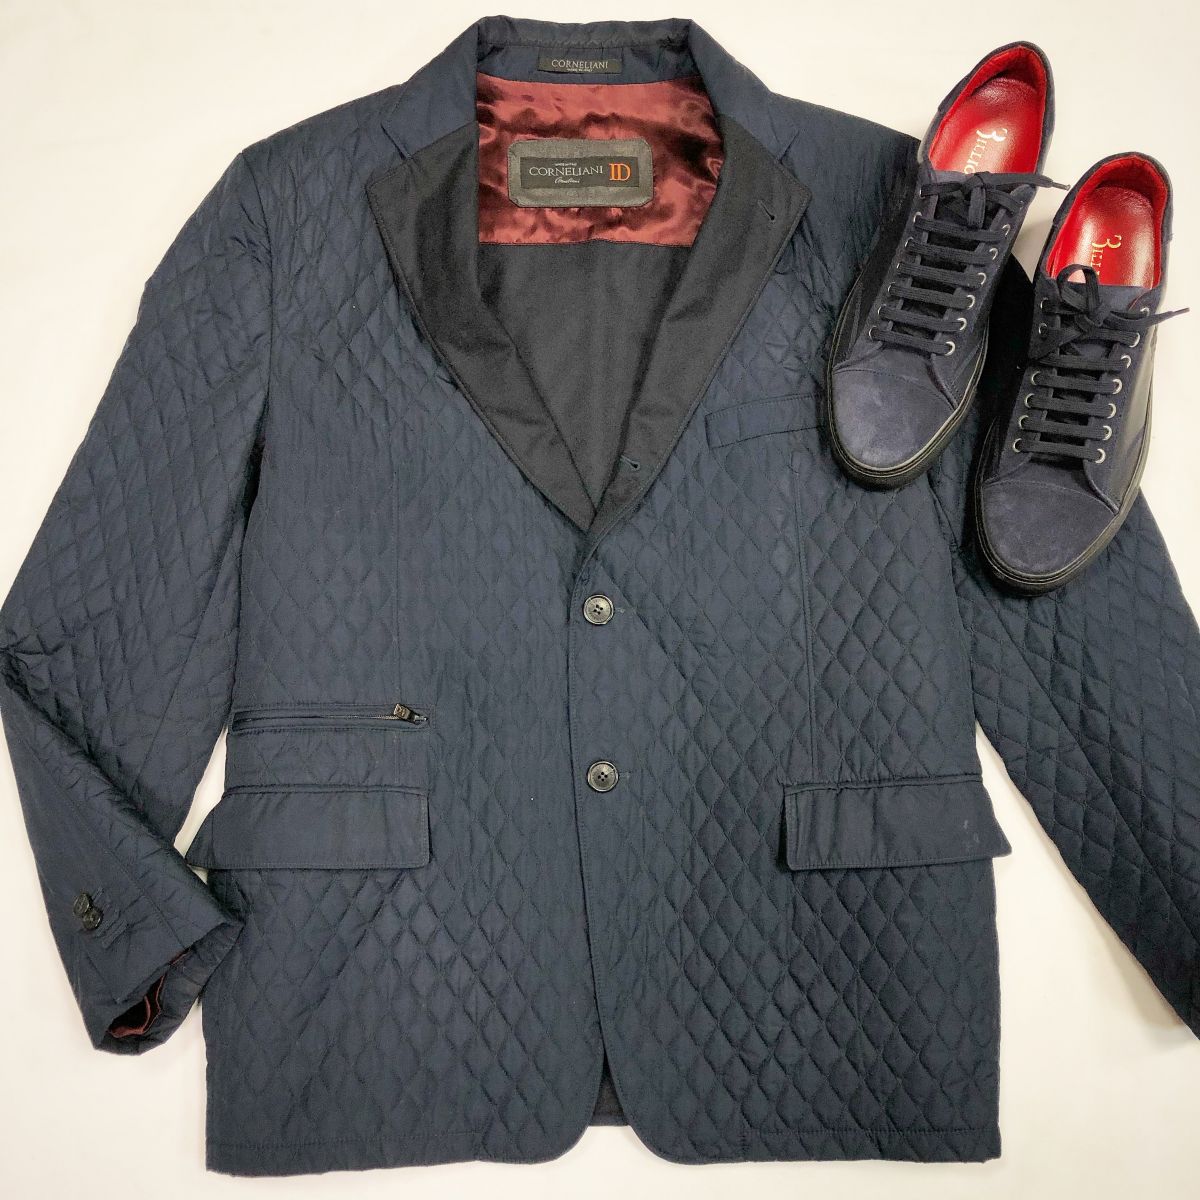 Куртка Corneliani размер 56 цена 30 770 руб Кеды Bilionaire размер 44 цена 23 077 руб